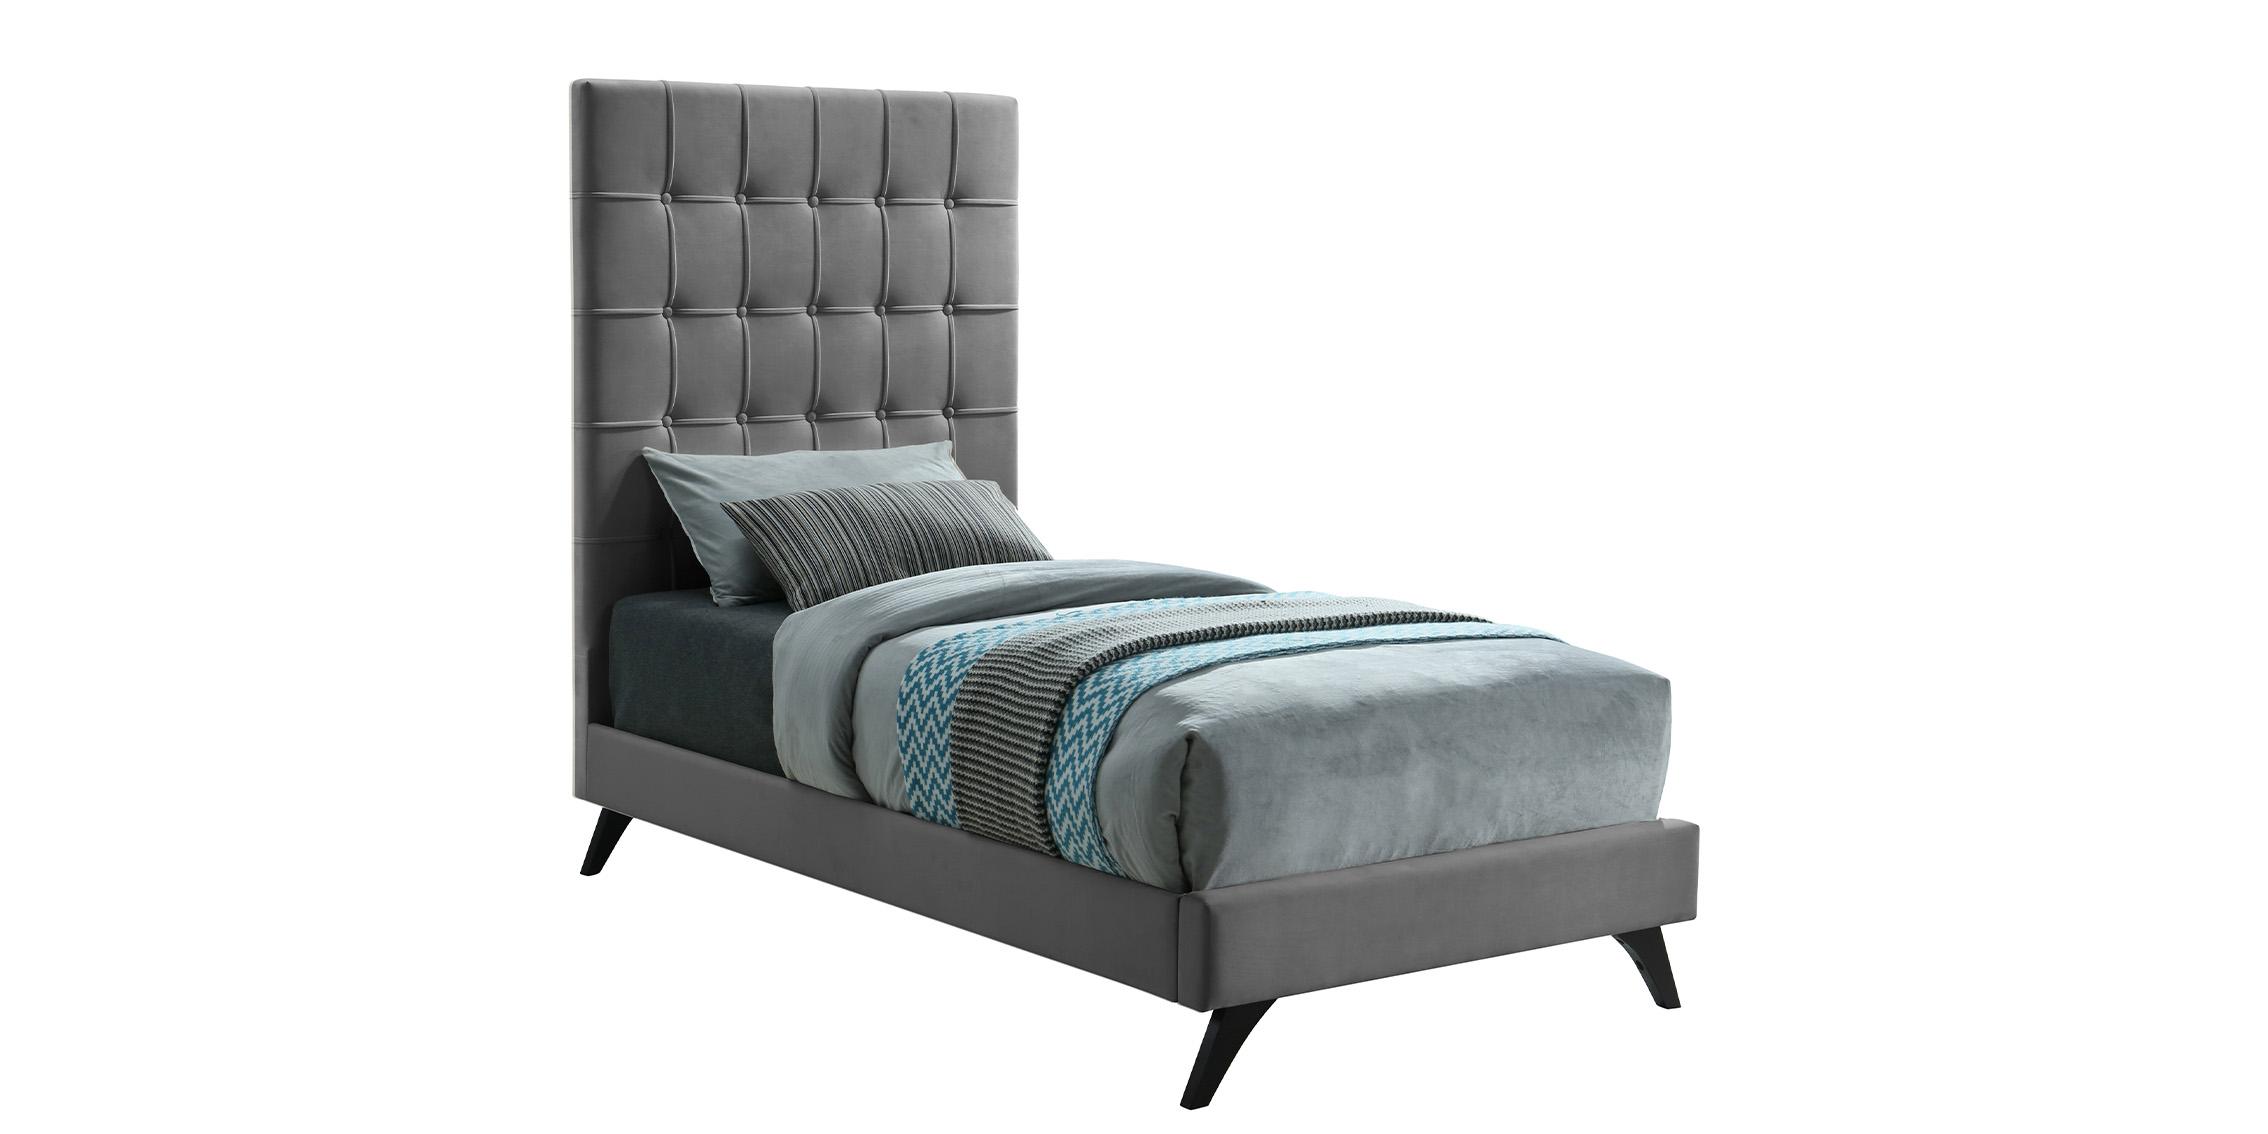 Contemporary, Modern Platform Bed ELLY EllyGrey-T EllyGrey-T in Espresso, Gray Fabric